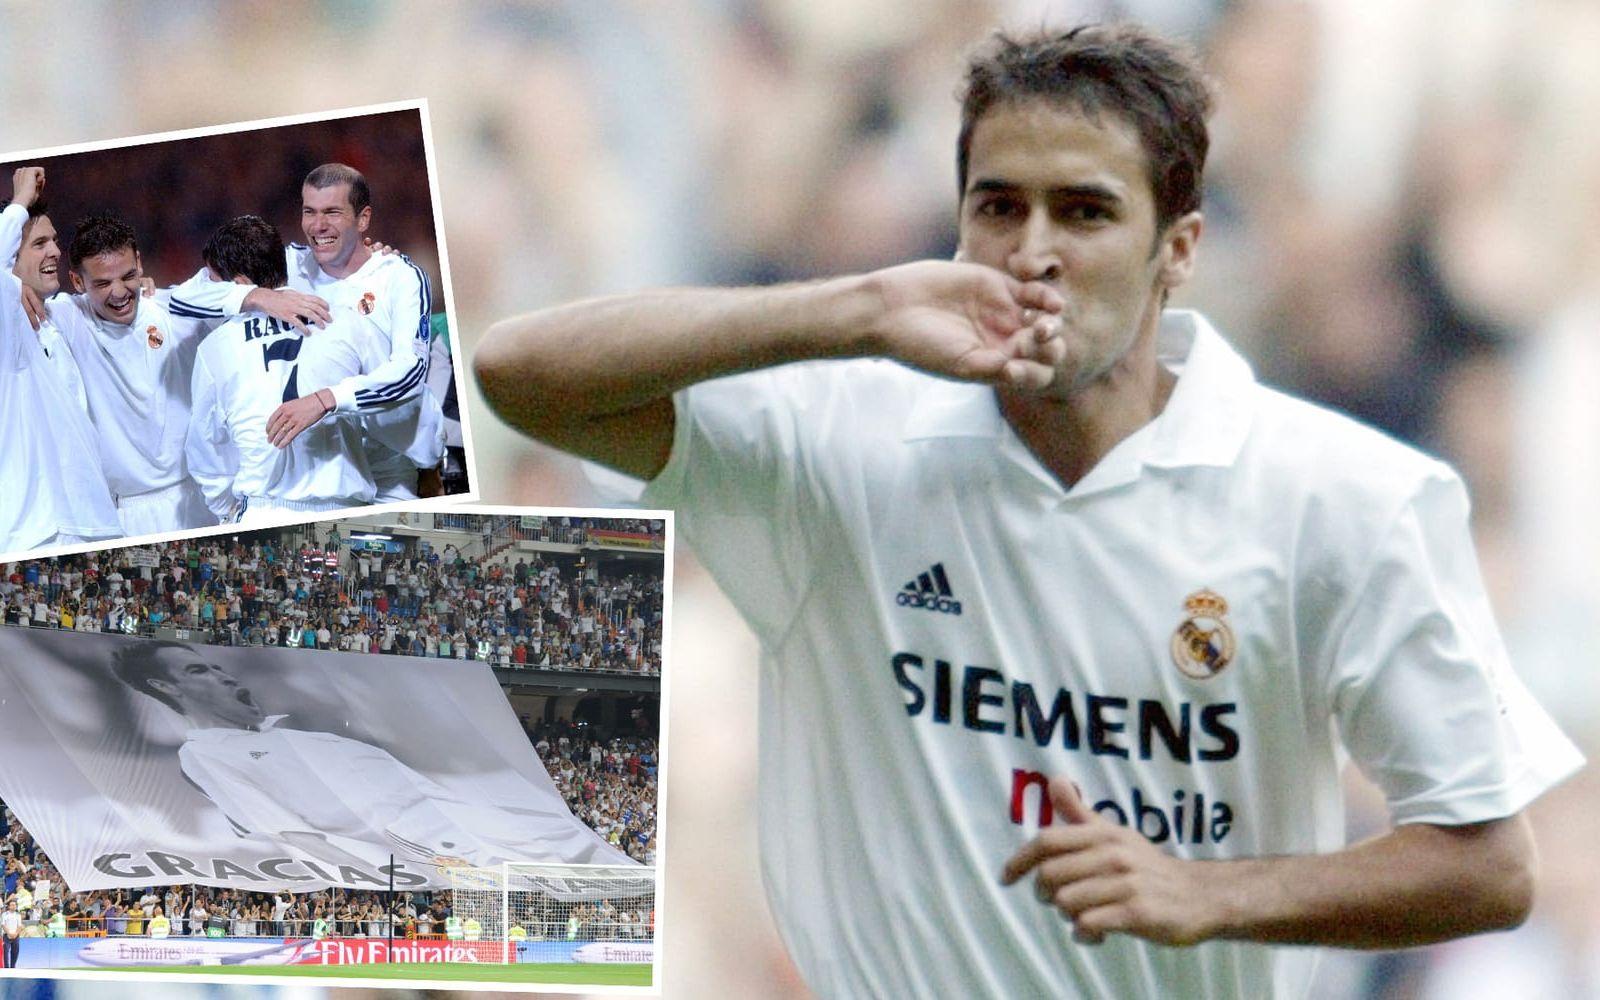 <strong>10. Raúl González Blanco, från Real Madrid till Shalke 04 2010.</strong> Efter en lång karriär och mängder av mål för "Los Blancos", blev det inget nytt kontrakt för klubbikonen. Då valde Shalke 04 att slå till. Foto: Bildbyrån/TT